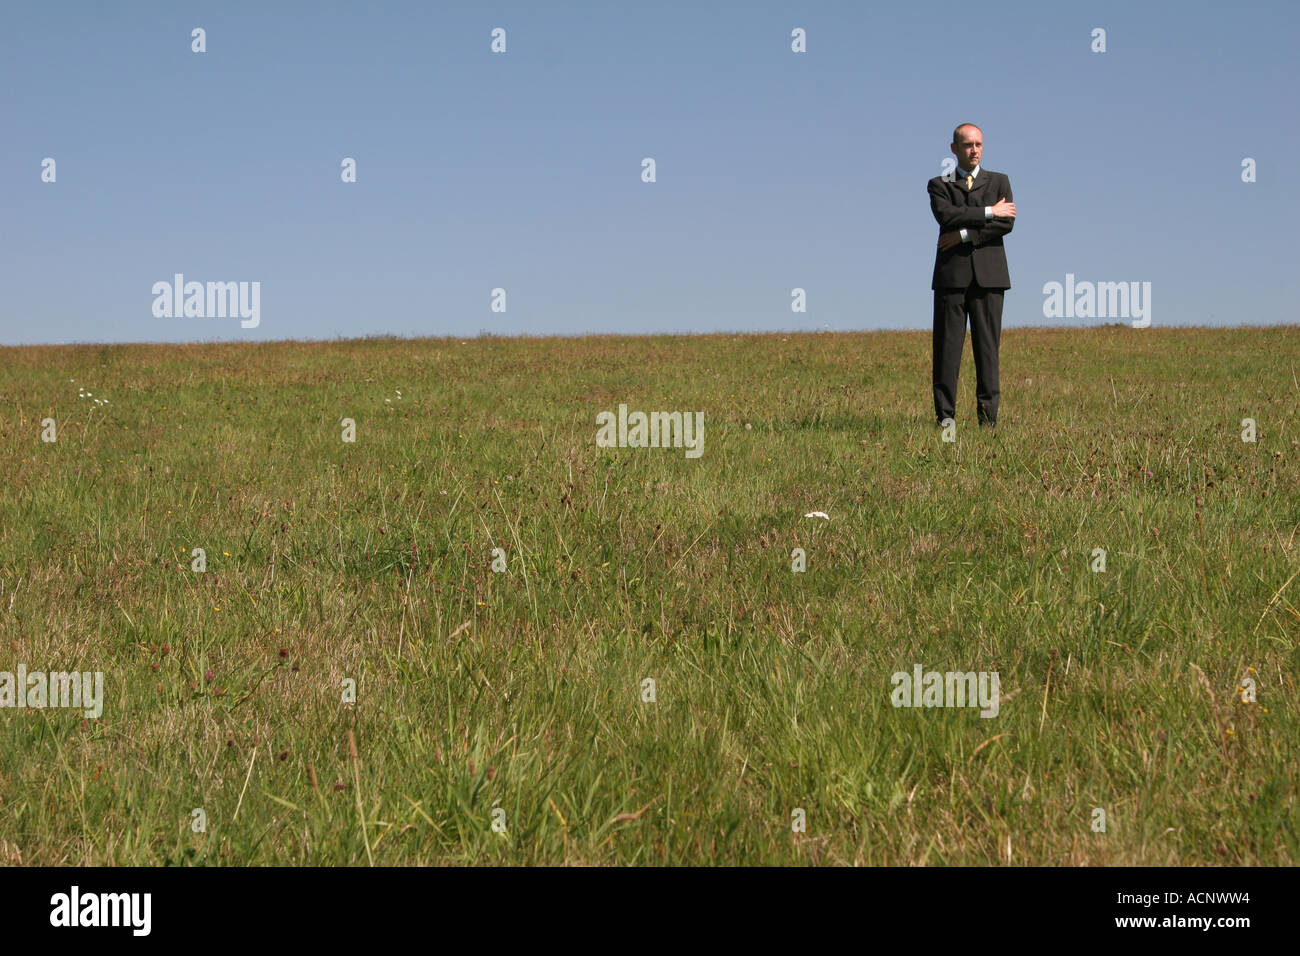 Lonley businessman on the meadow - Geschäftsmann alleine auf einer Wiese Stock Photo